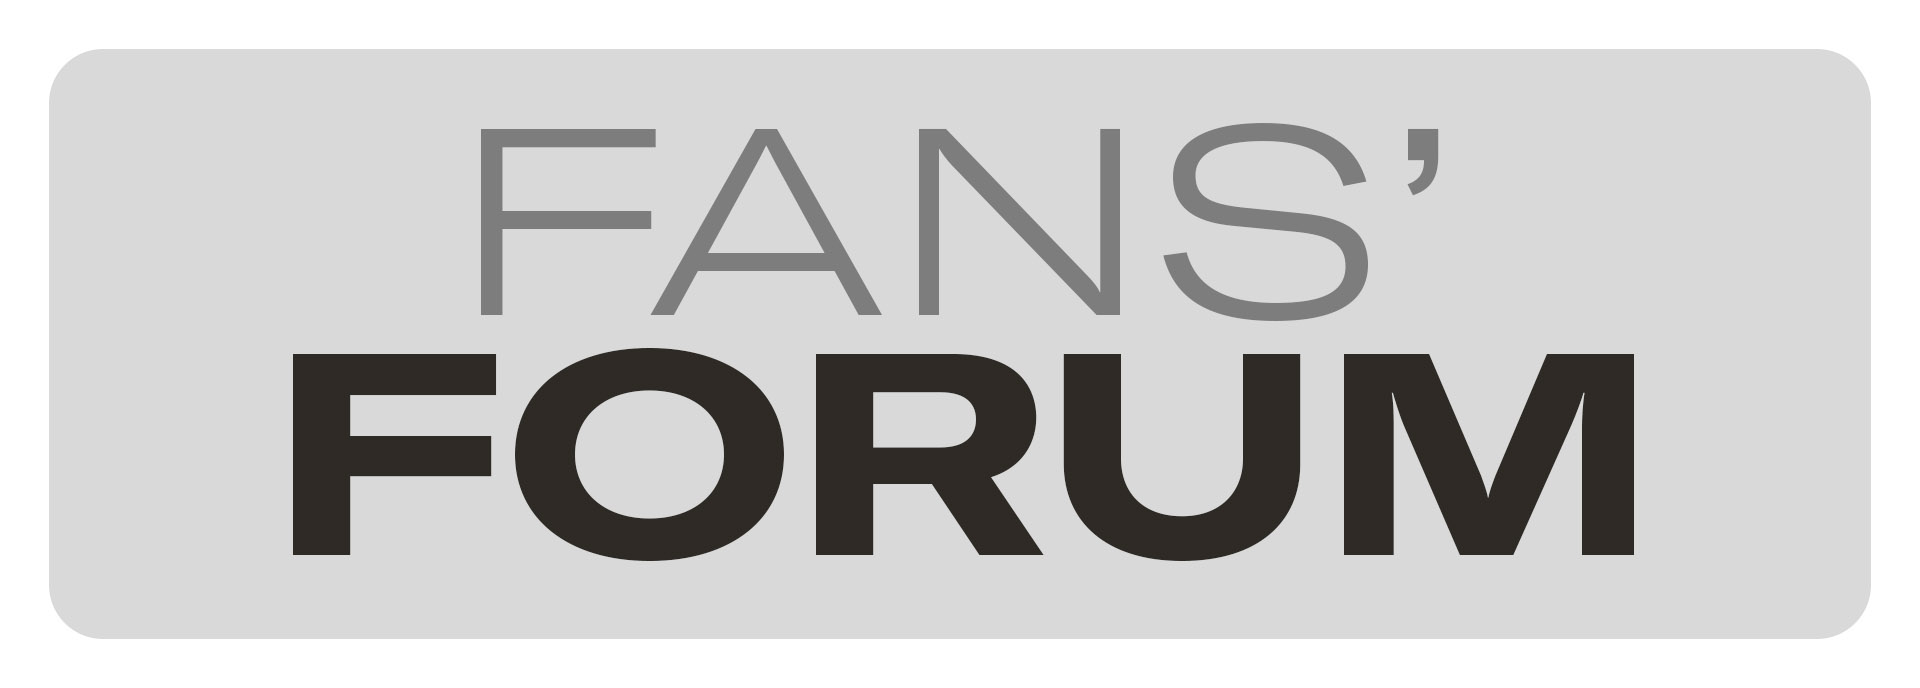 Fans' Forum Title